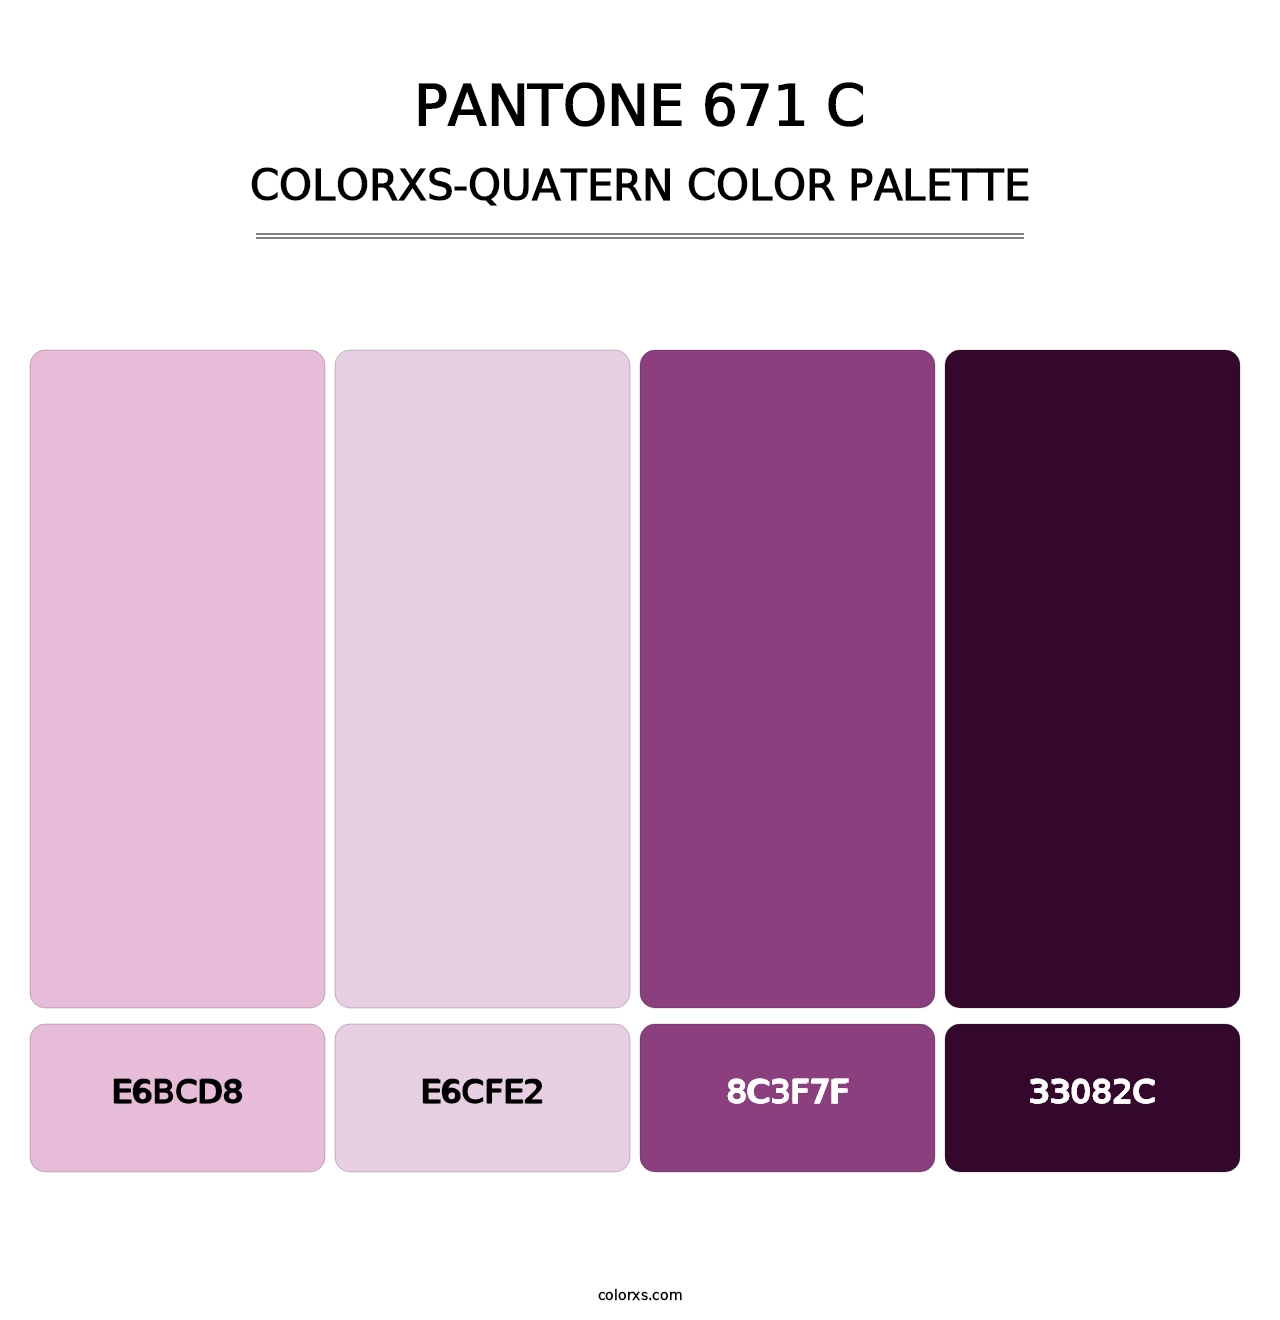 PANTONE 671 C - Colorxs Quatern Palette